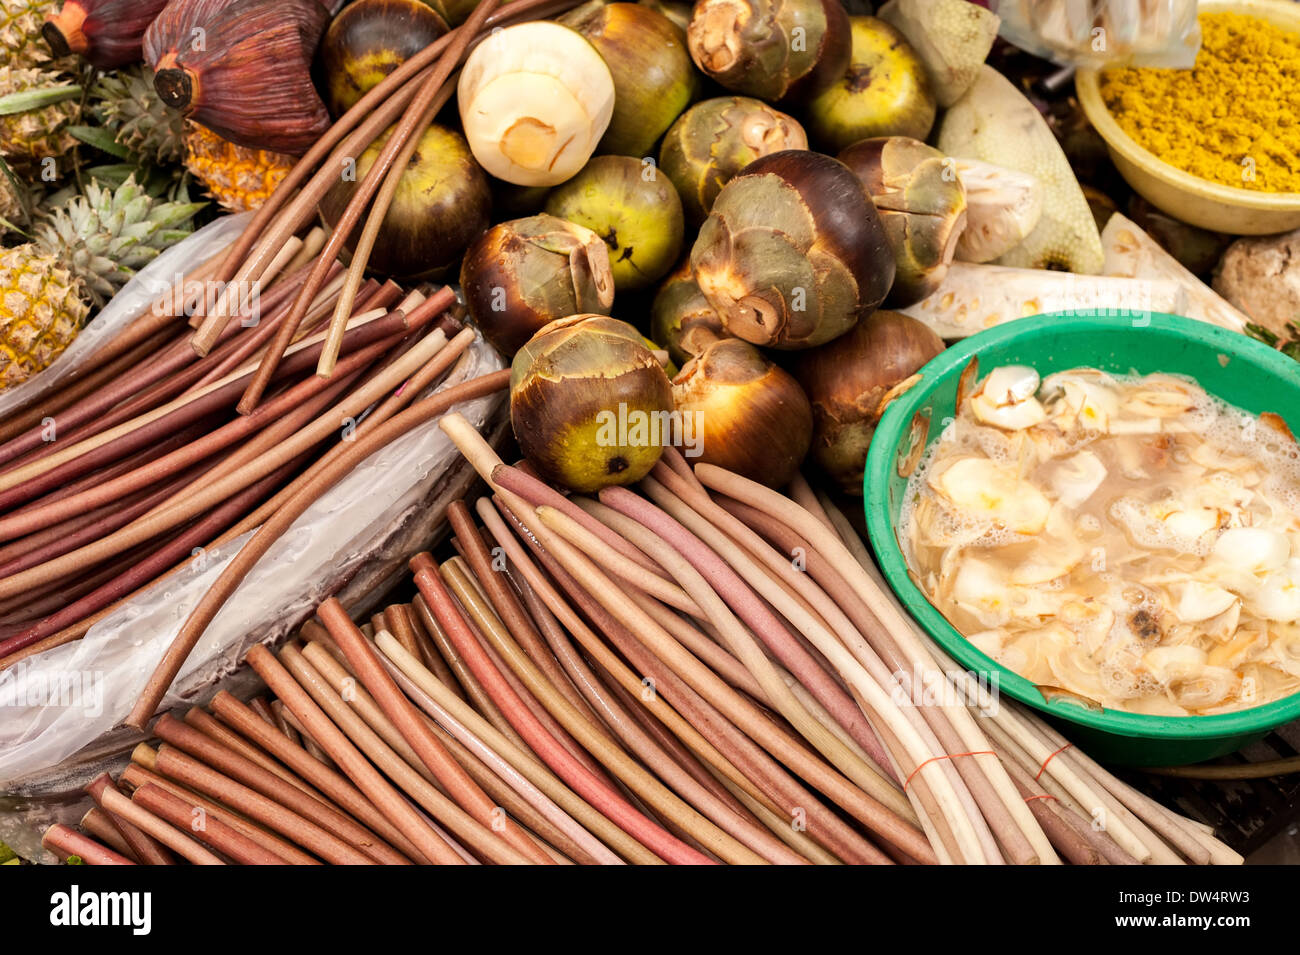 Exotische Früchte und Gemüse im traditionellen asiatischen Lebensmittelmarkt Mangostan Wasser Lilly Stiele marinierten Pilzen Stockfoto